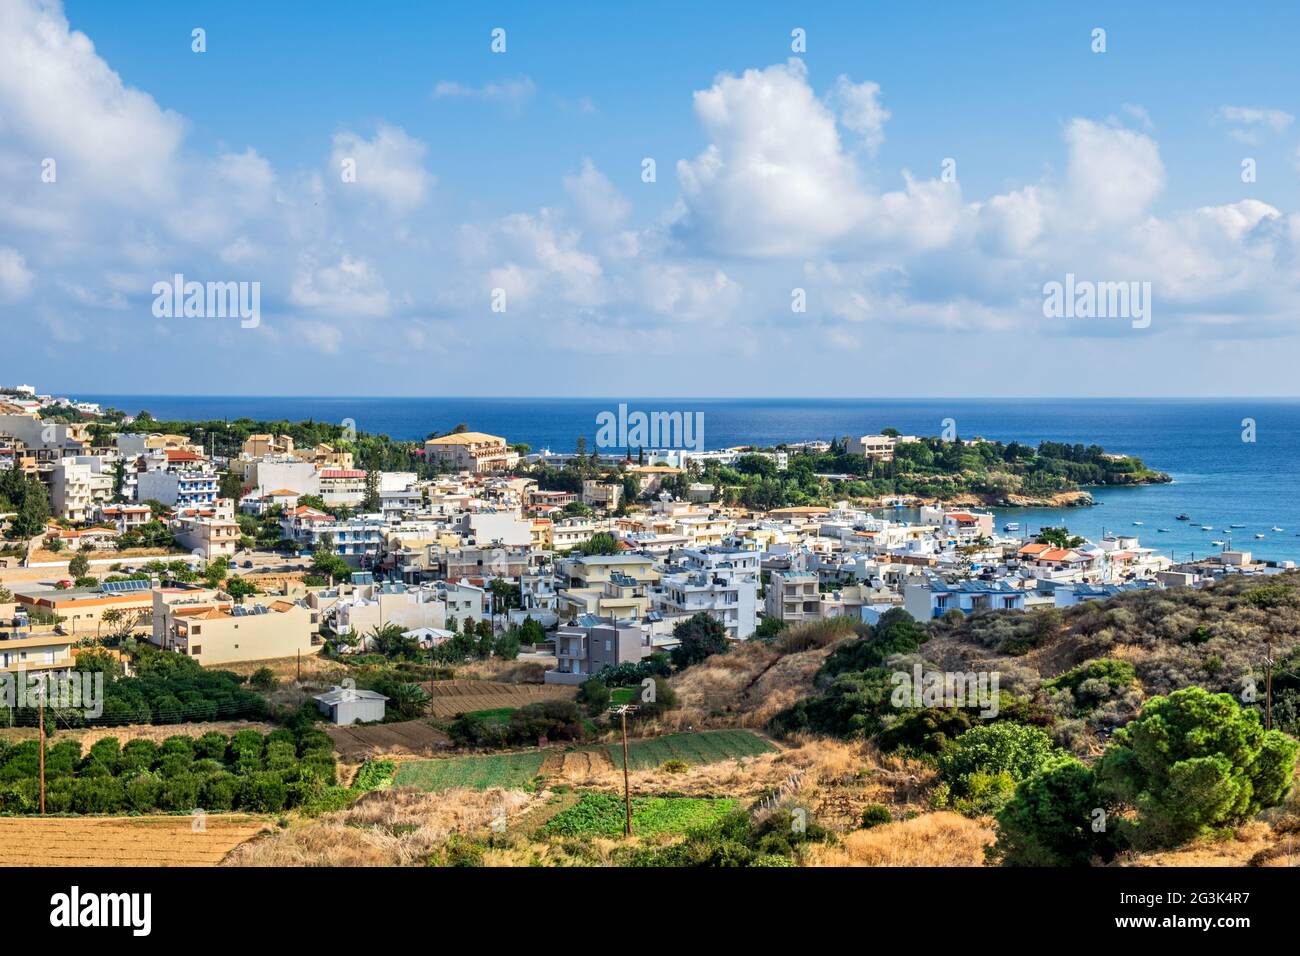 Hafen von Kissamos im Westen der griechischen Insel Kreta Stock Photo